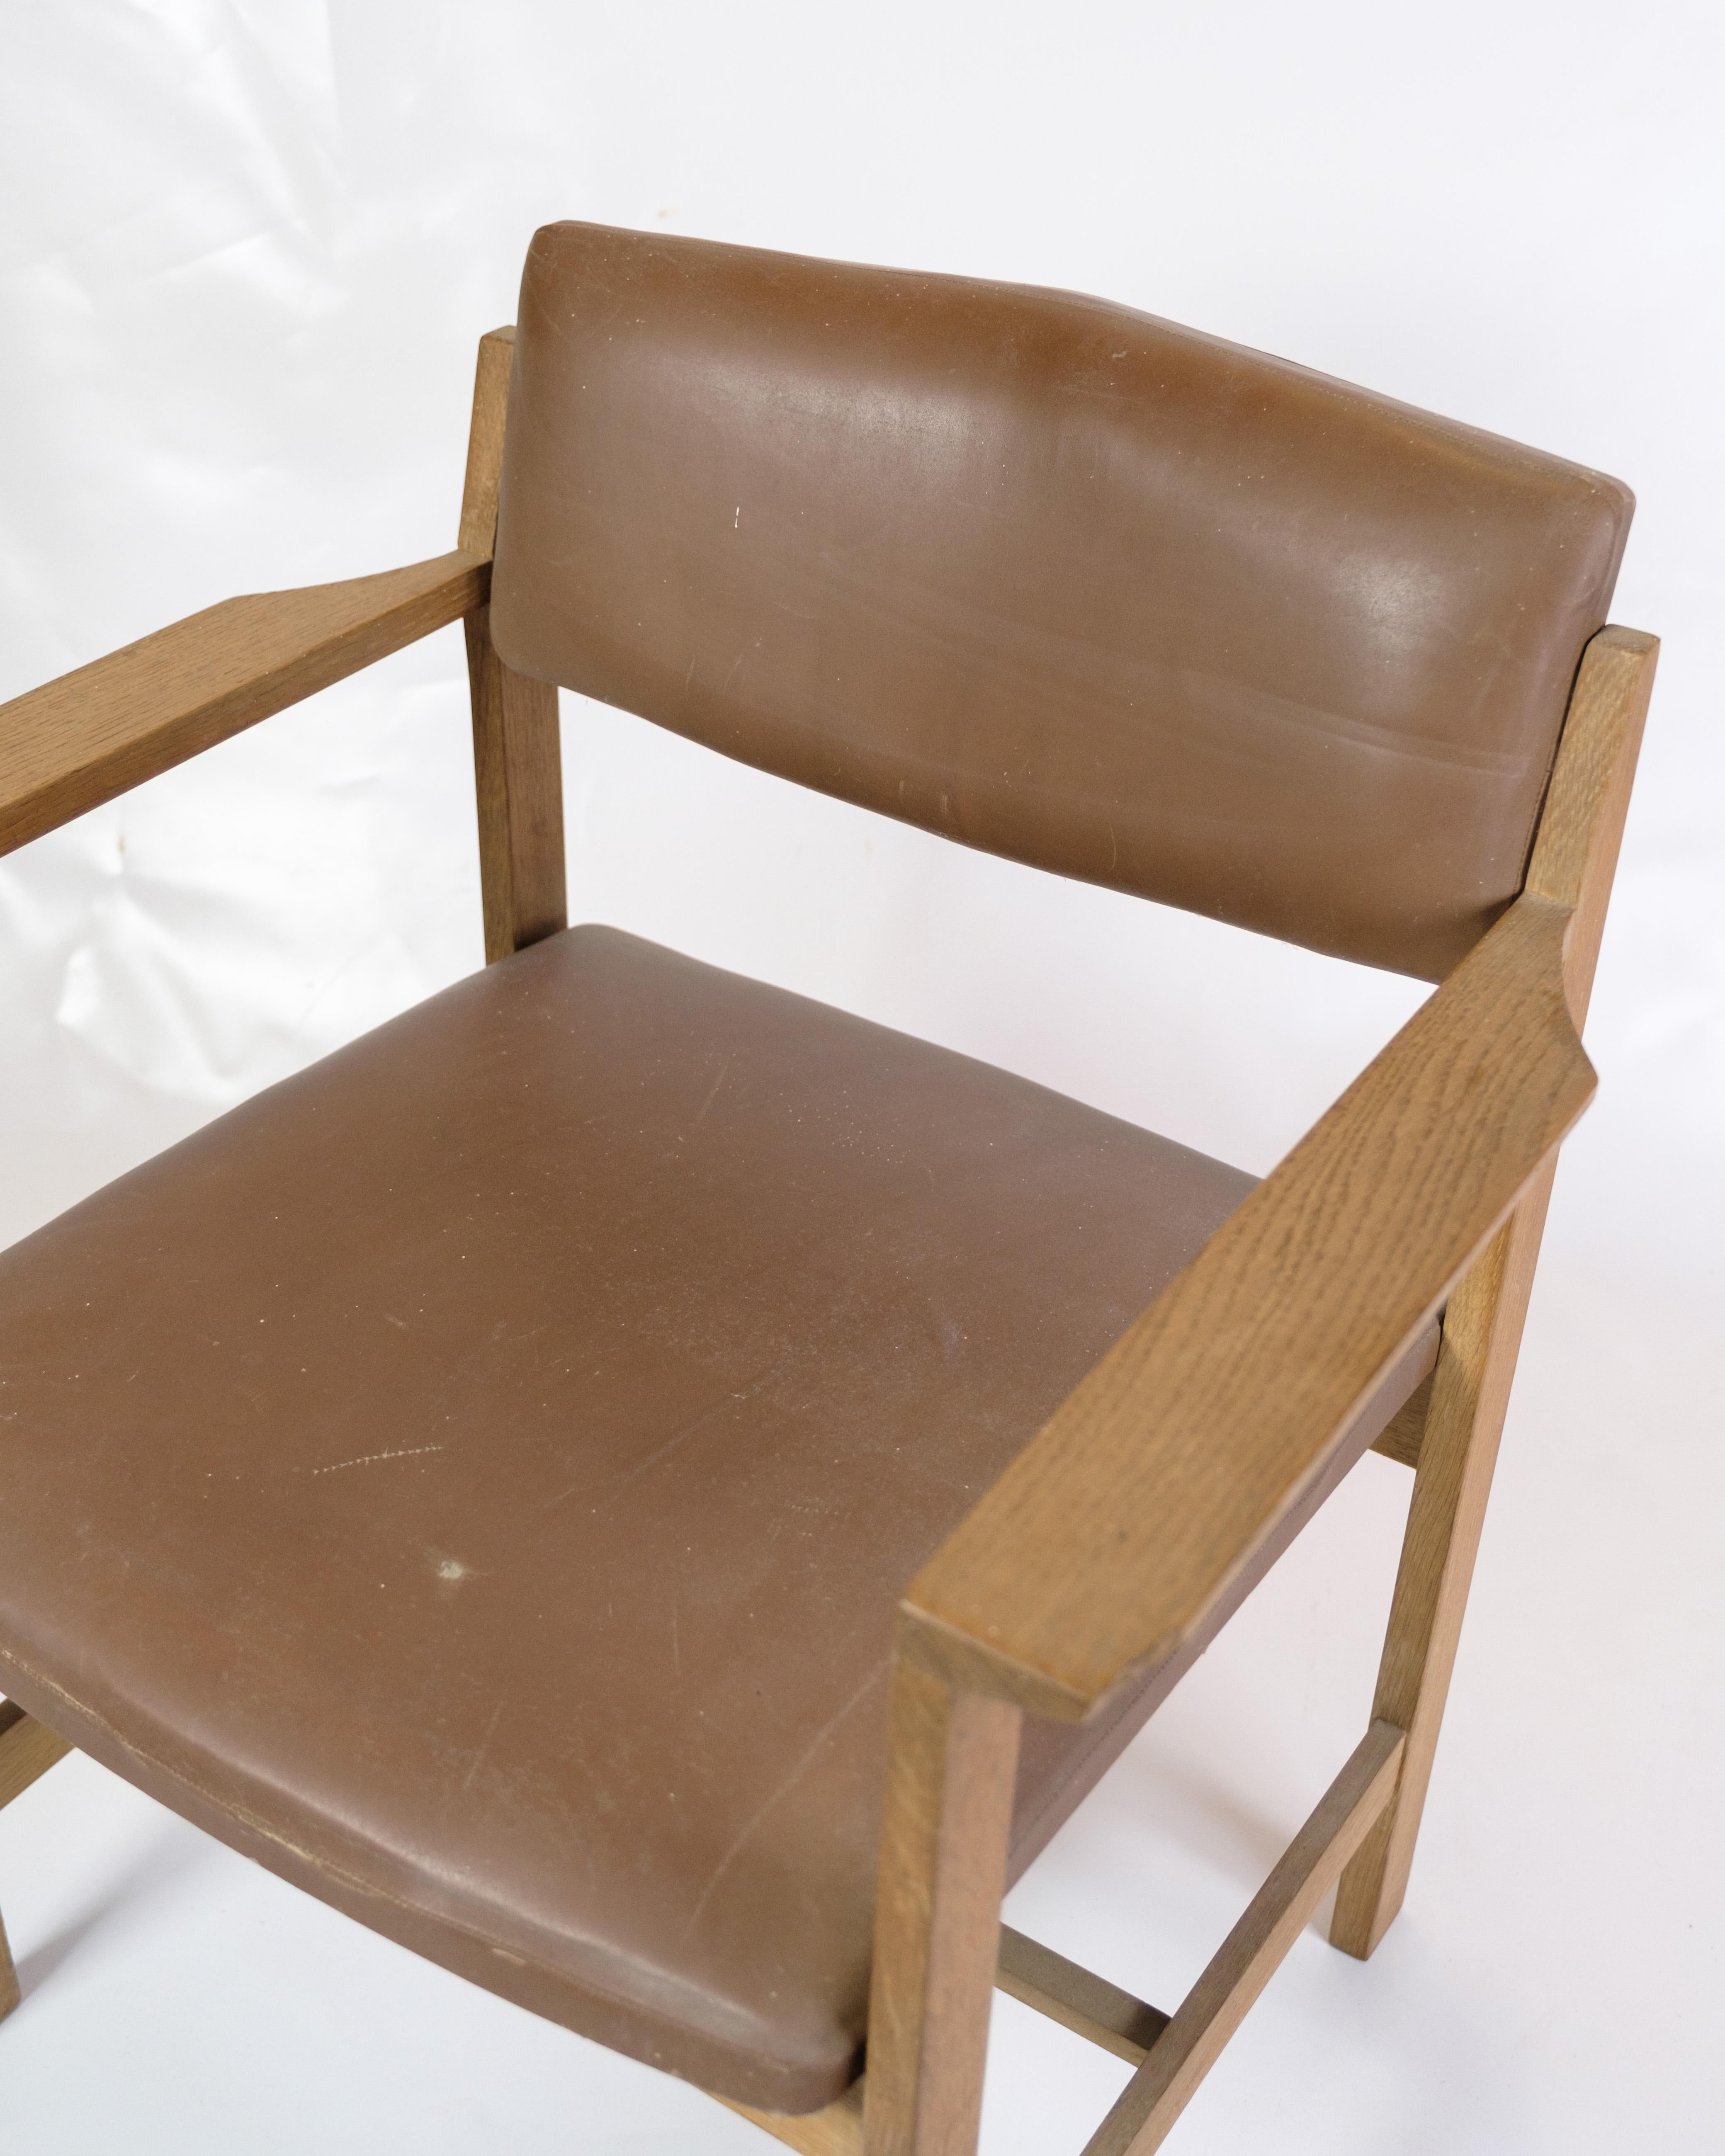 Bürostuhl aus dem Jahr 1970, aus robustem Eichenholz gefertigt und mit braunem Leder gepolstert. Dieses zeitlose Design bringt einen Hauch von Eleganz in jedes Büro oder Studio. Mit seinem ergonomischen Design und den langlebigen Materialien ist er